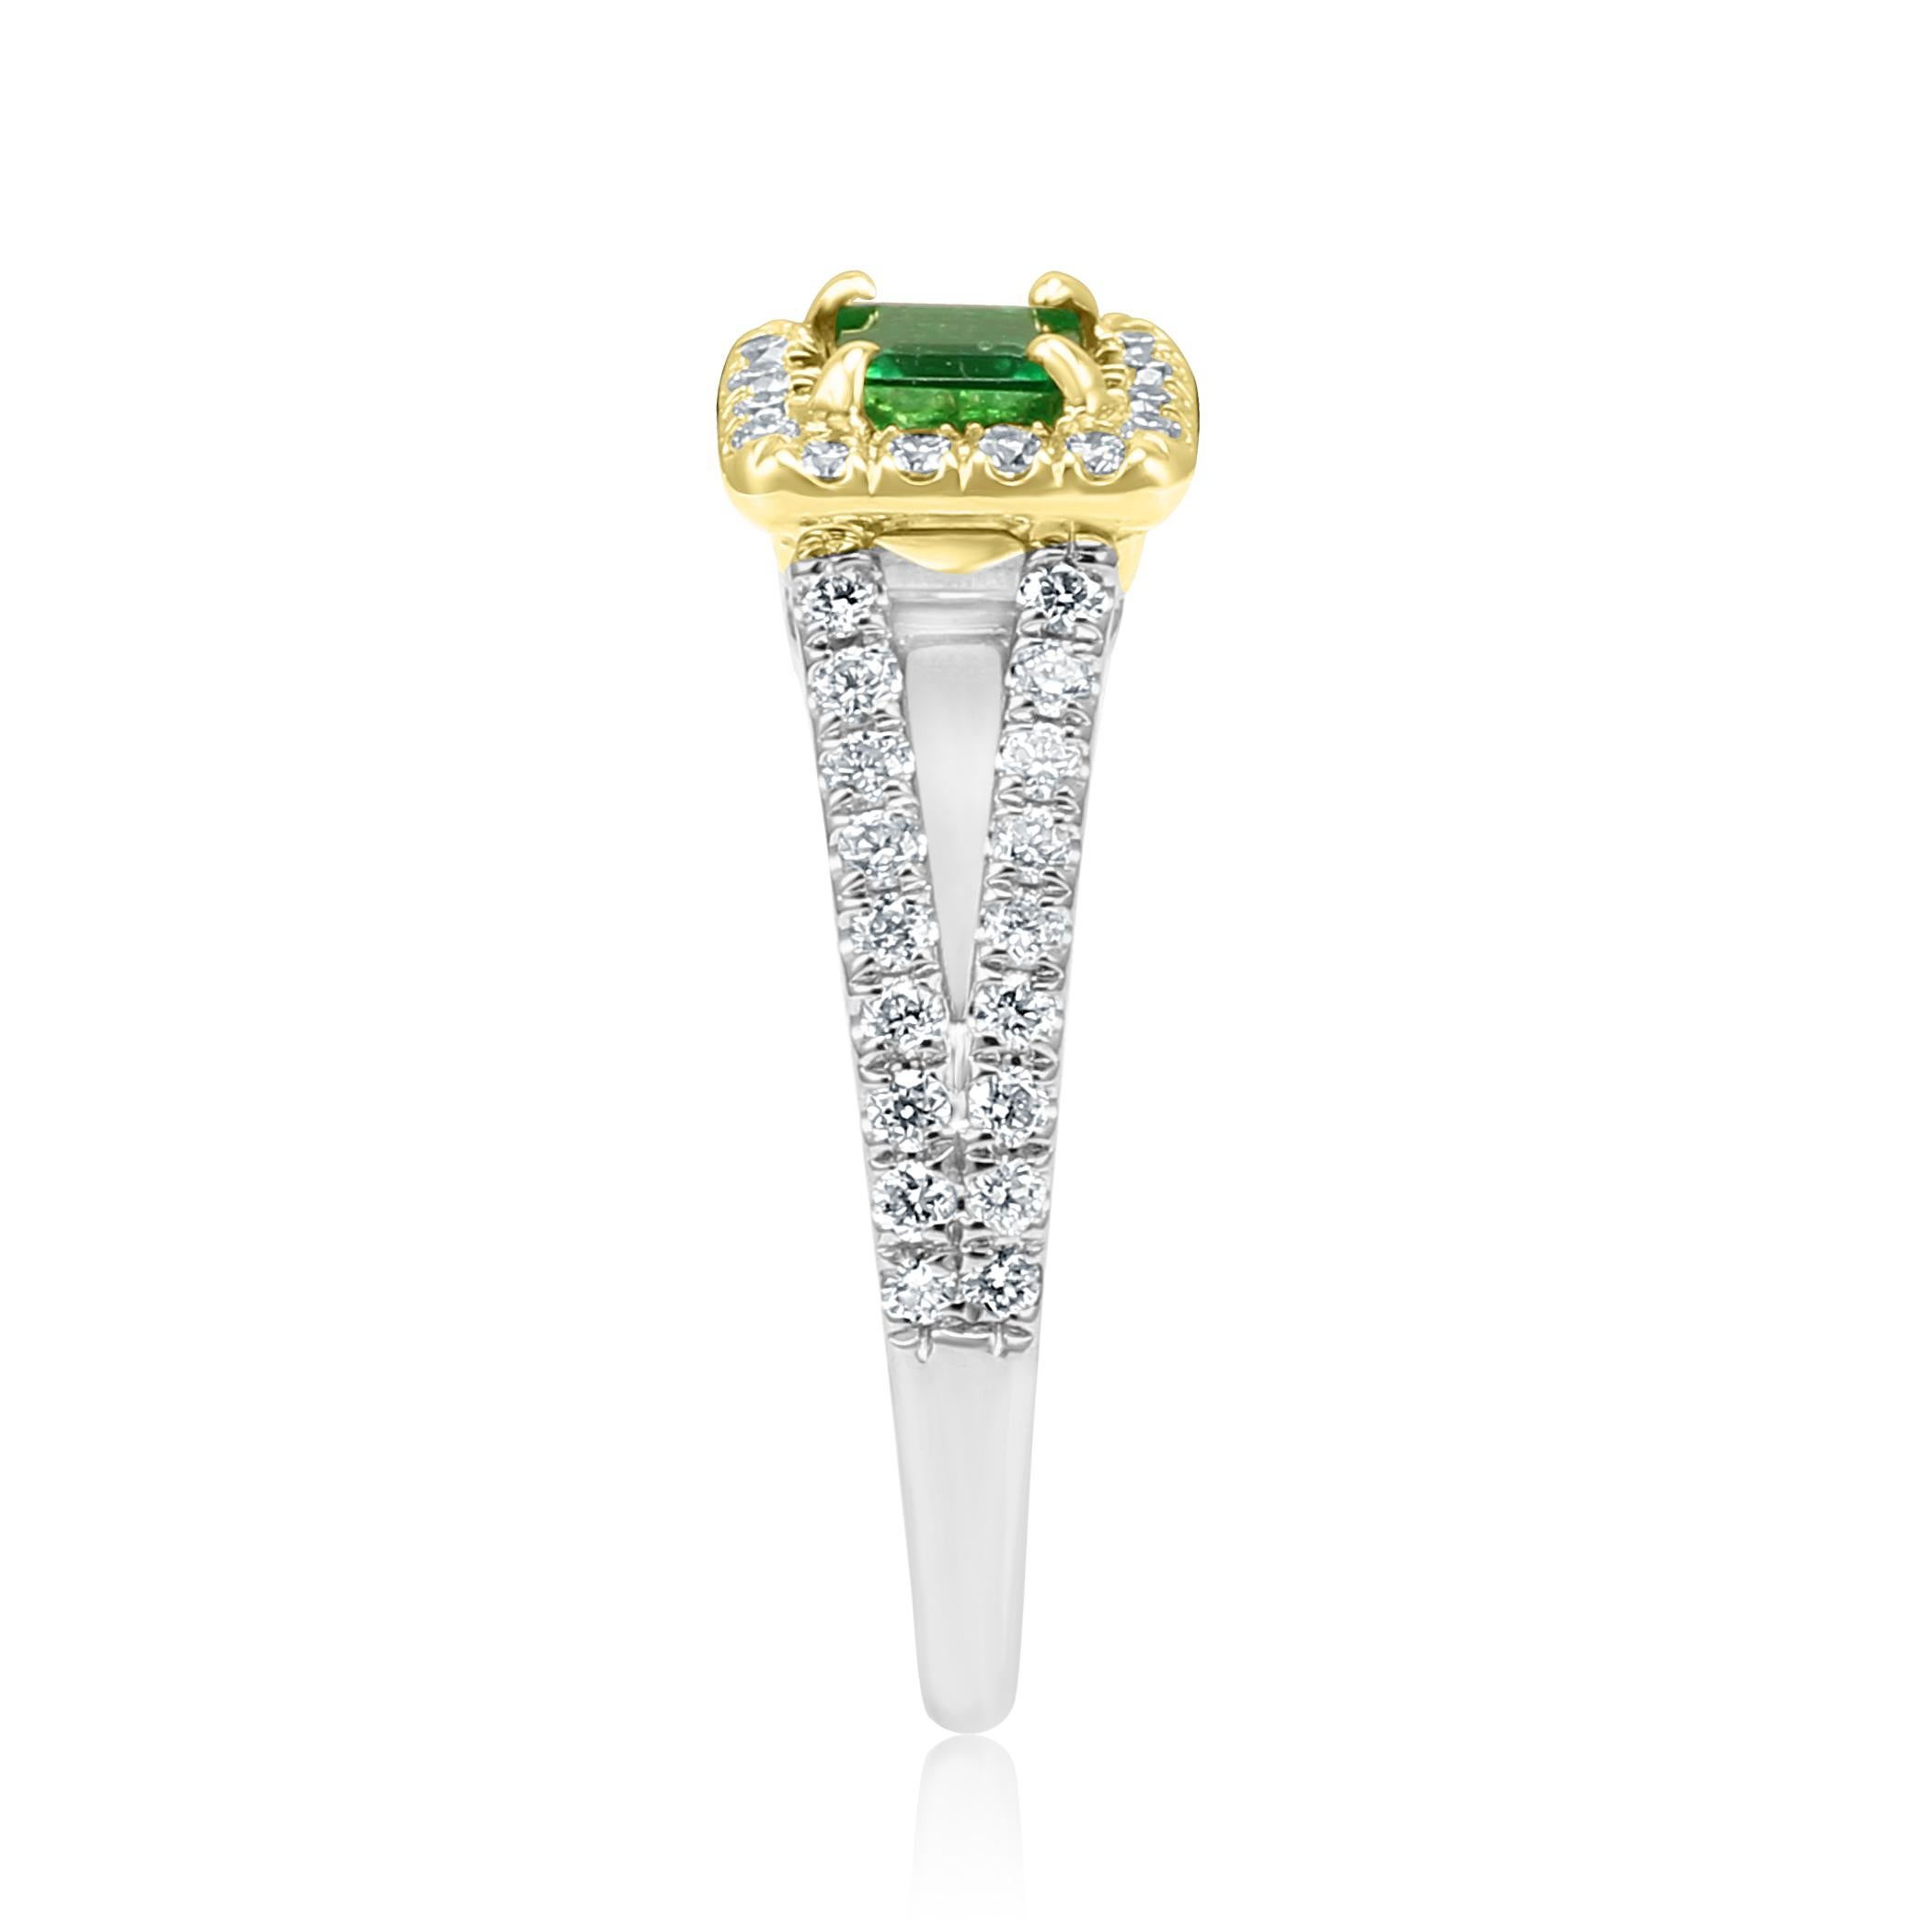 Emerald Emerald Cut White Diamond Halo Two Color Gold Bridal Fashion Ring 1